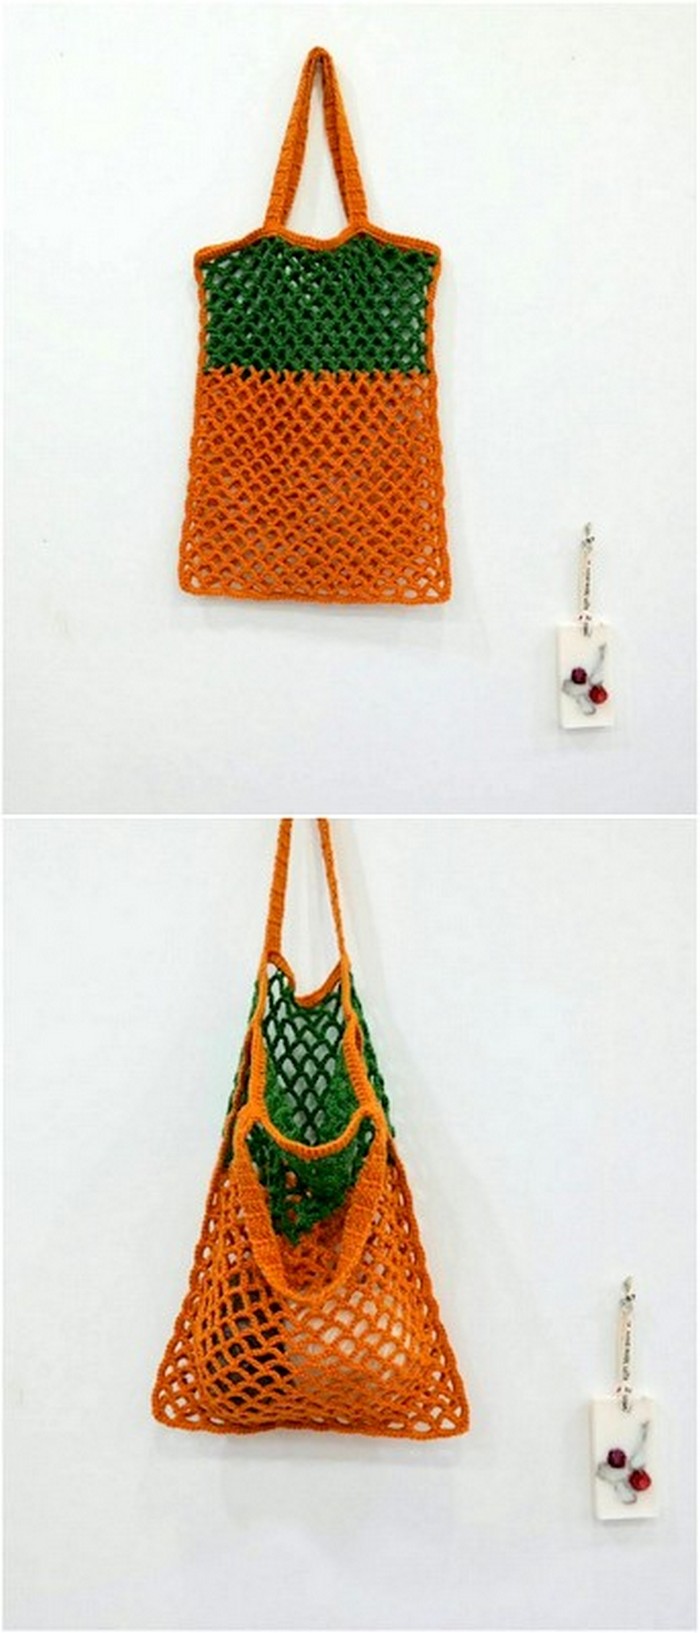 beautiful crochet shopping bag idea